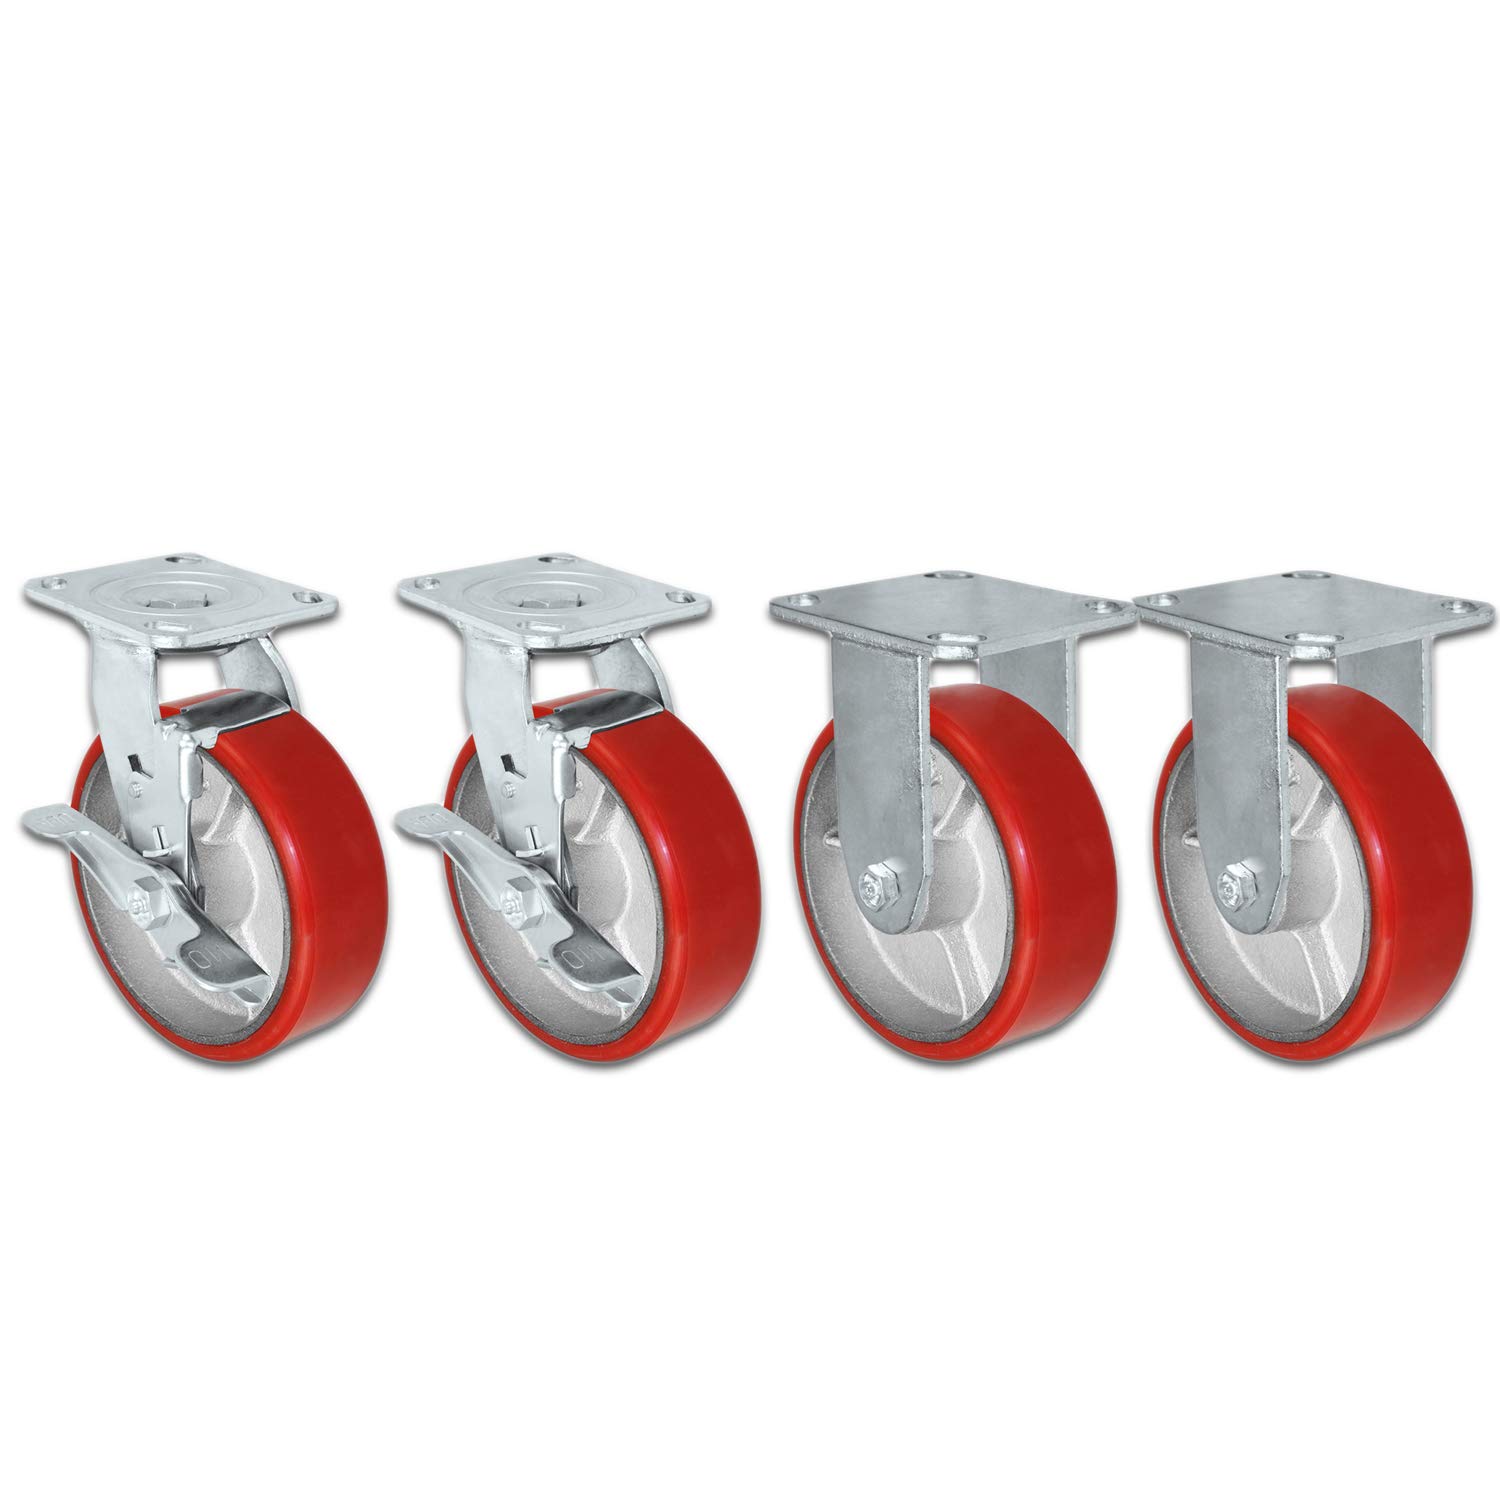 CasterHQ Rodízio giratório de 5' x 2' Roda de poliuretano vermelha resistente em cubo de aço com freios (2) e fixo (2) 4.000 lbs por conjunto de 4 rodízios de caixa de ferramentas - marca (5')